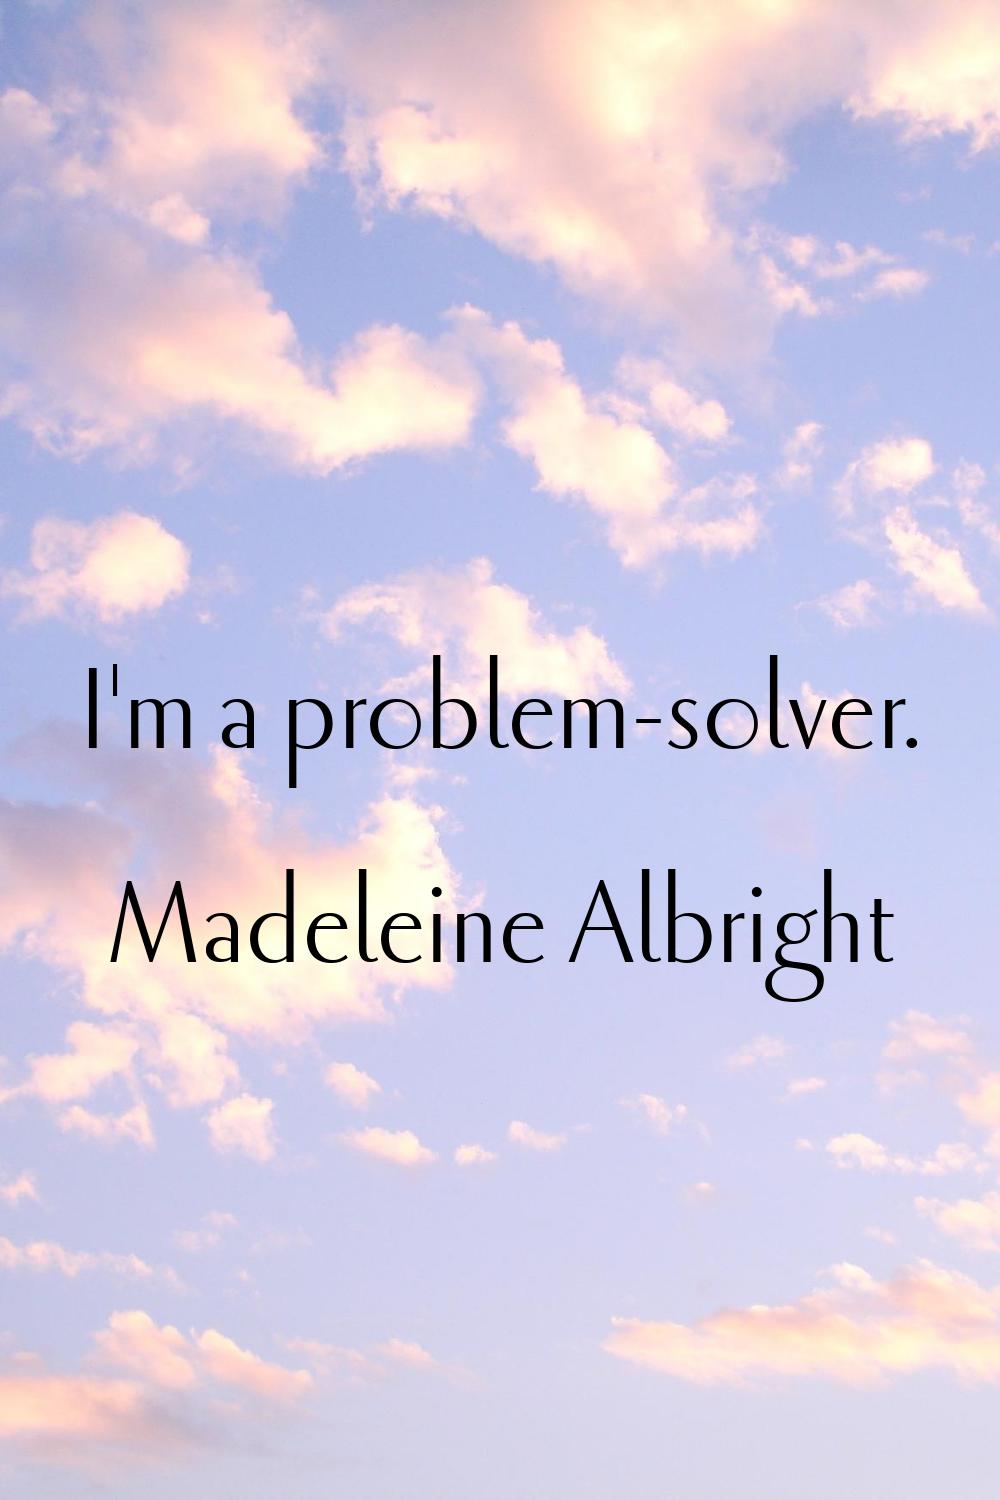 I'm a problem-solver.